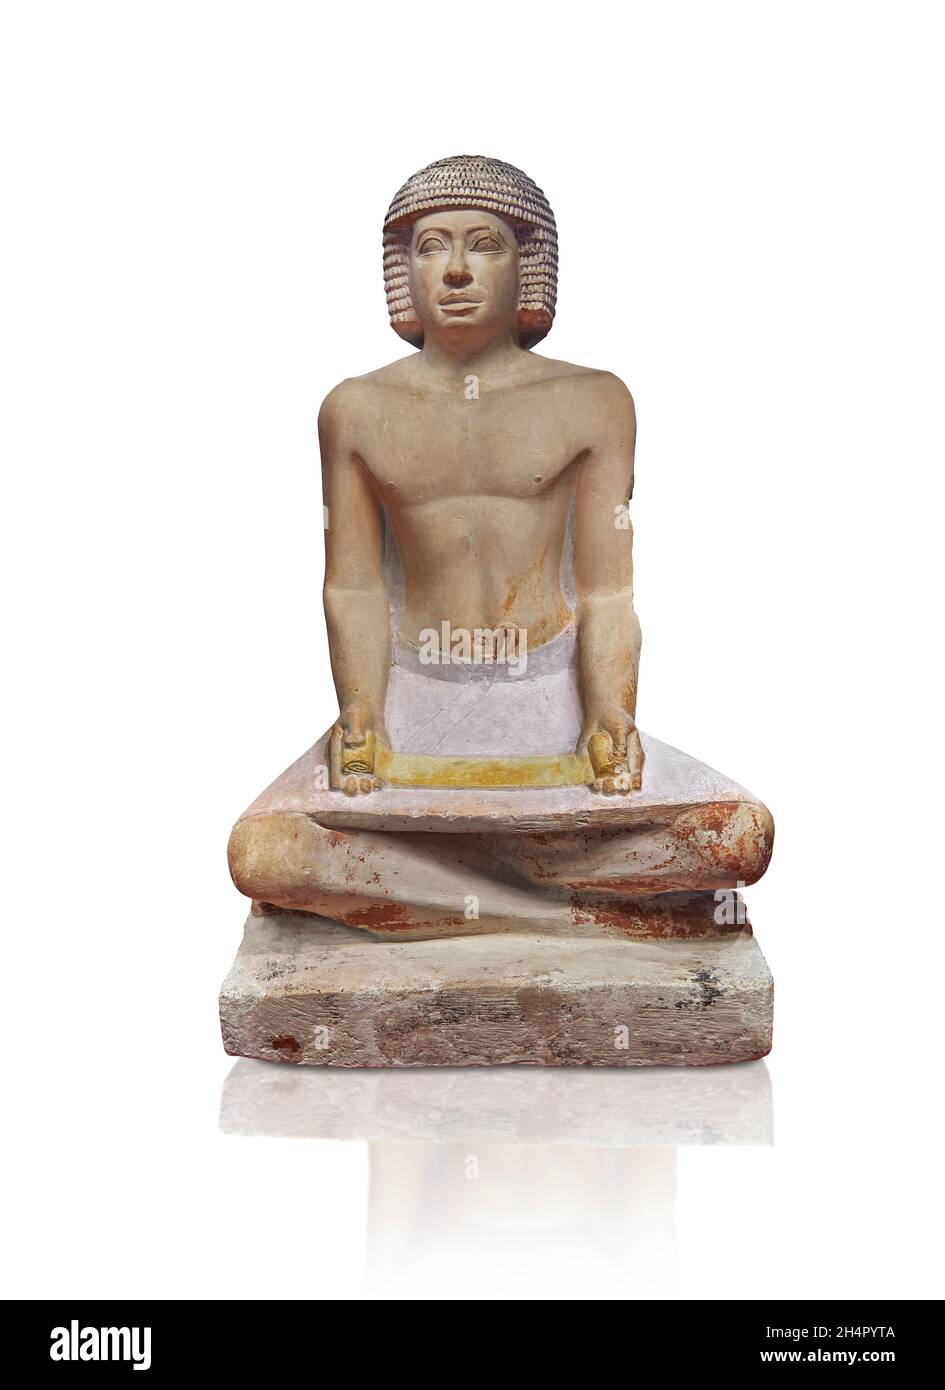 Statua egiziana scultura di uno scriba seduto a zampe incrociate con un papiro in grembo, 2500-2530 a.C., quinta dinastia, calcare. Museo del Louvre Foto Stock